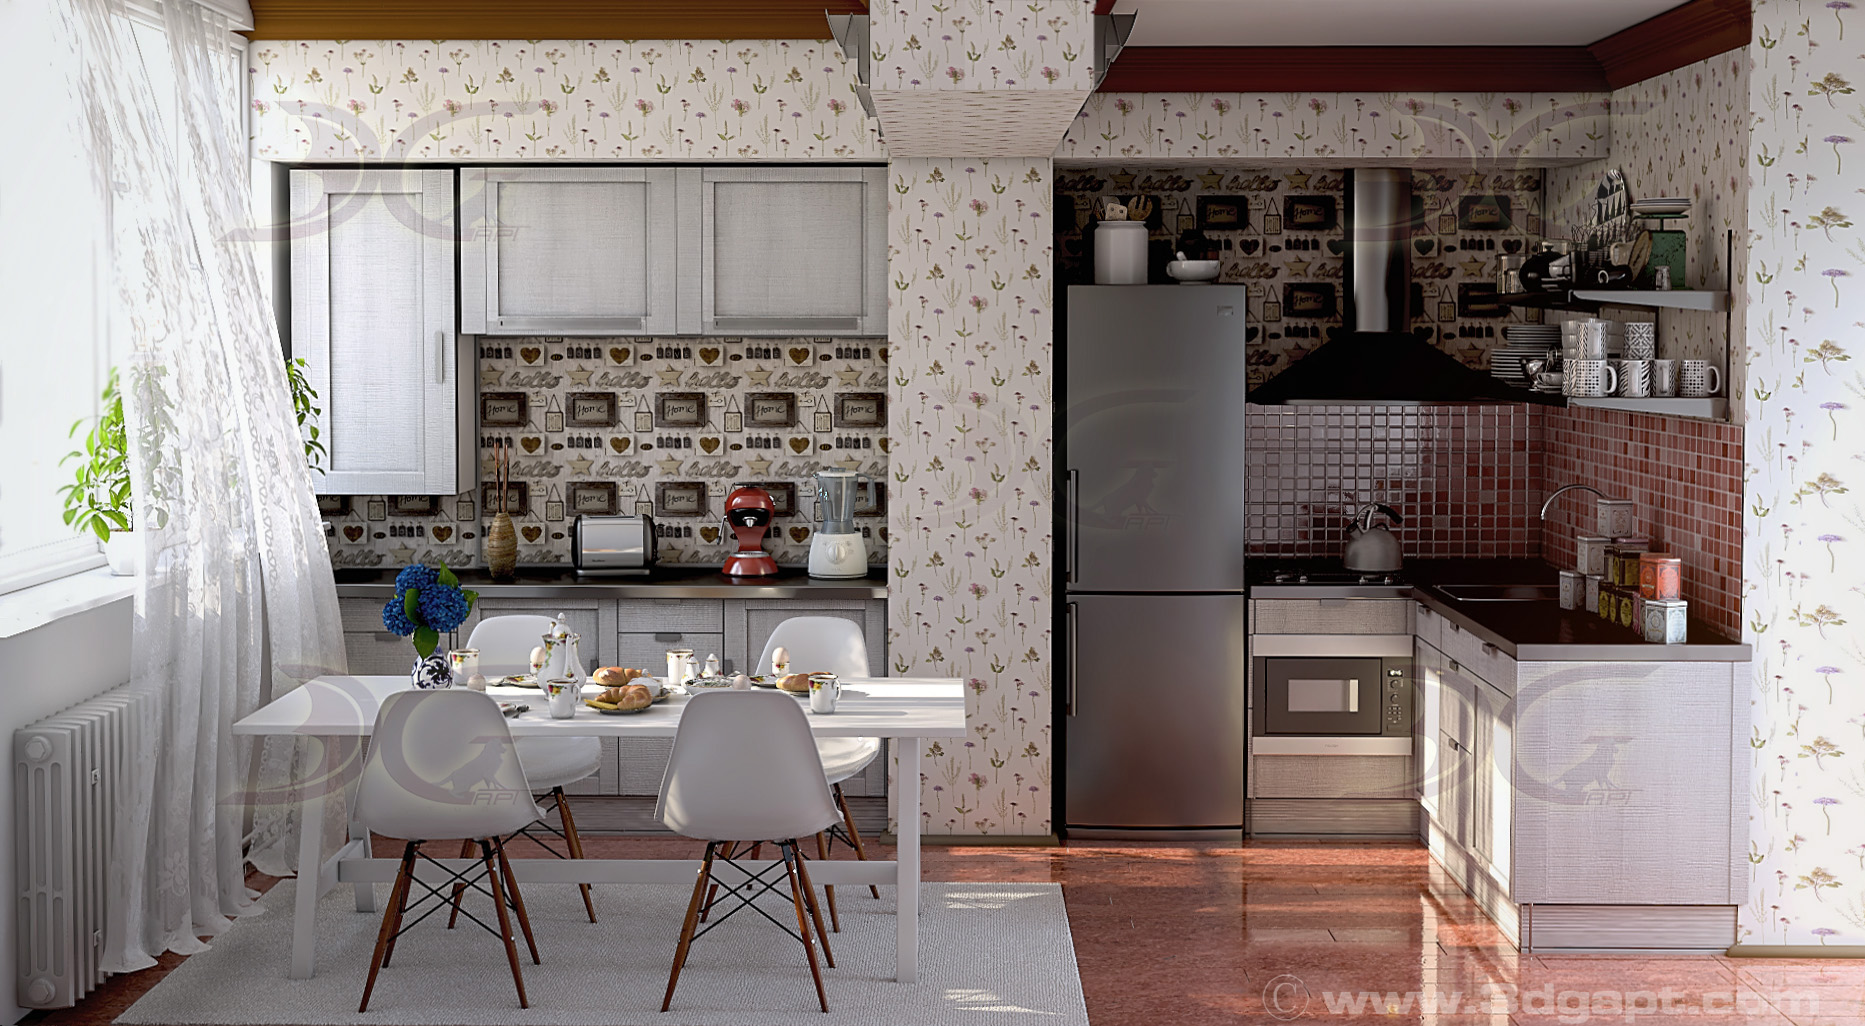 architecture interior kitchen-2versions 001